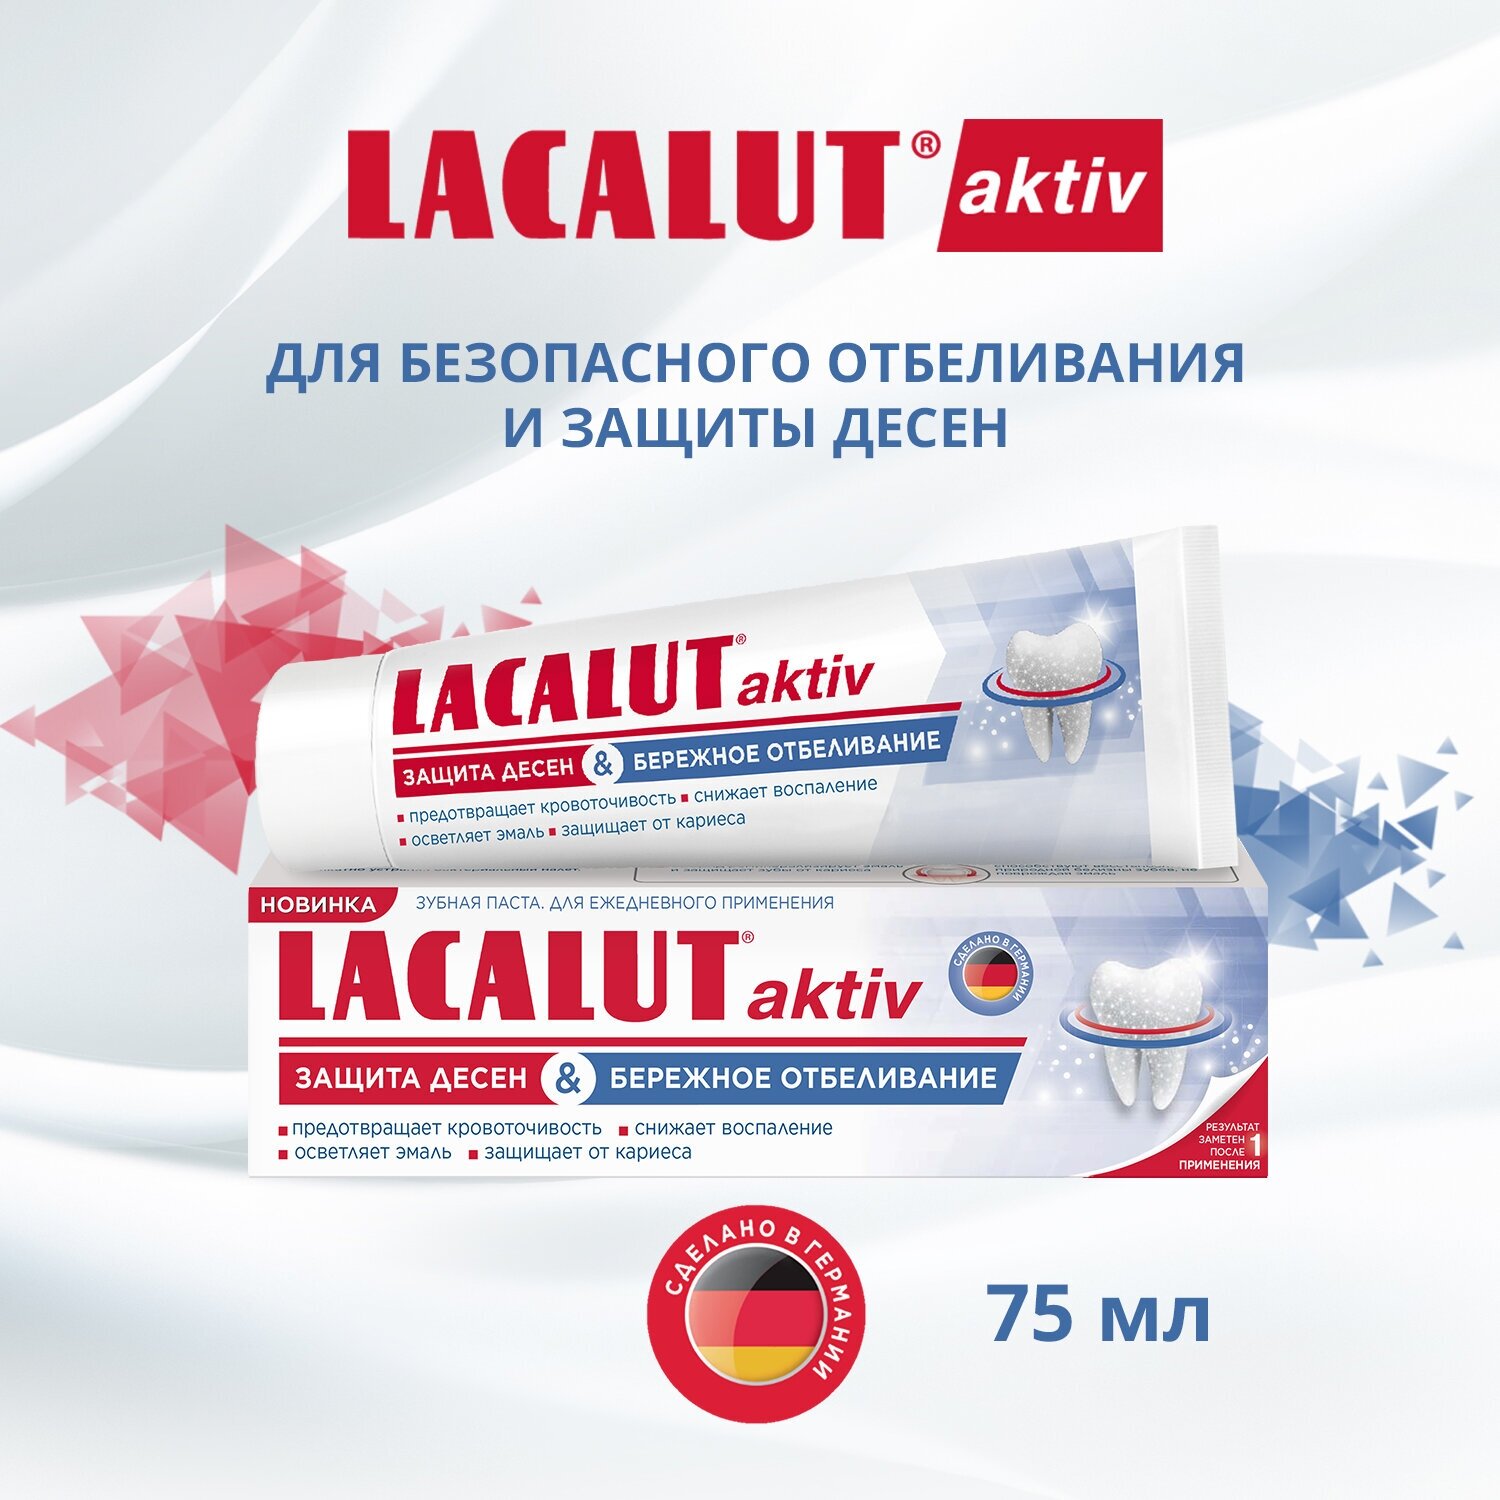 LACALUT® aktiv защита десен и бережное отбеливание, зубная паста,75 мл